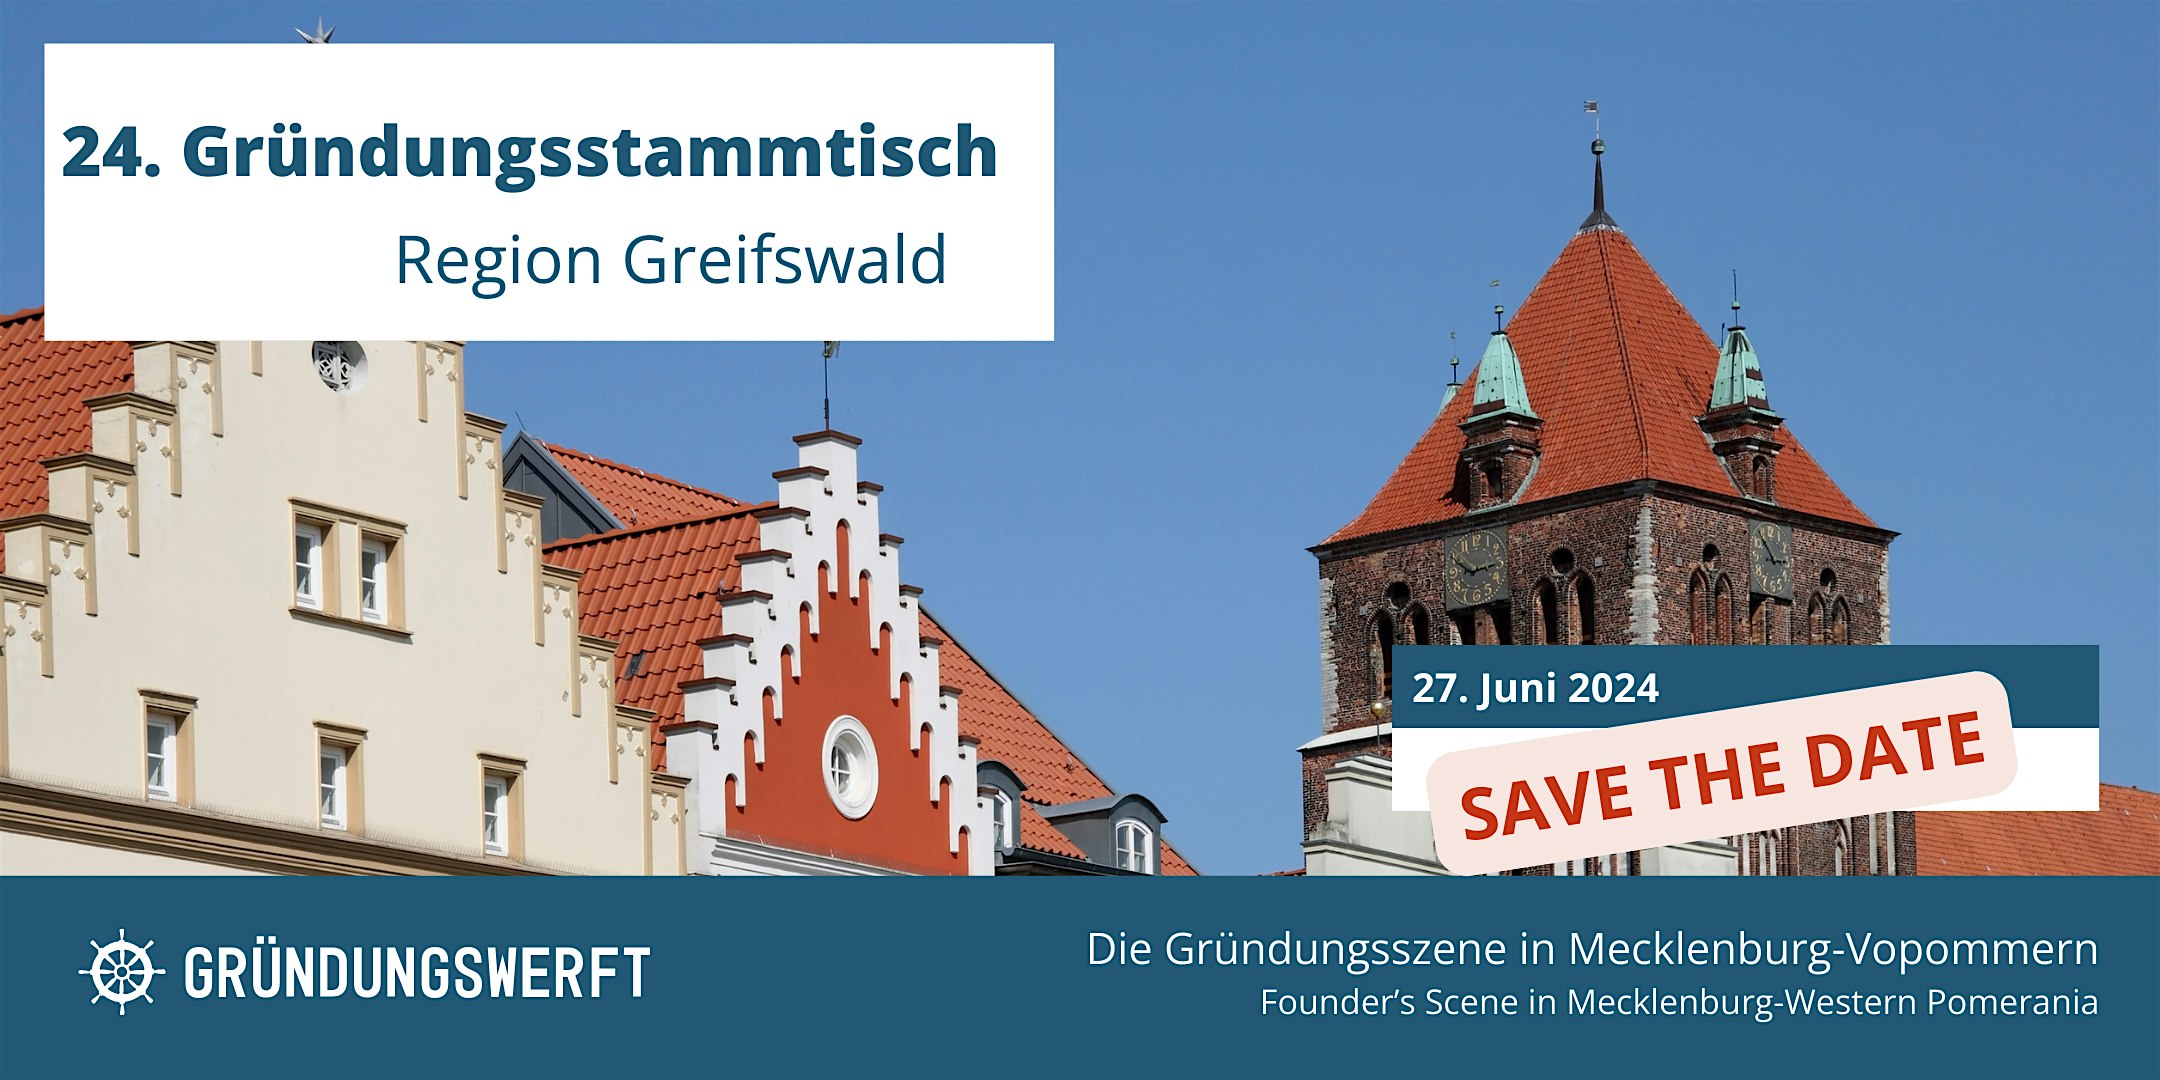 Veranstaltungsbild für die Veranstaltung 24. Gründungsstammtisch Greifswald SAVE THE DATE